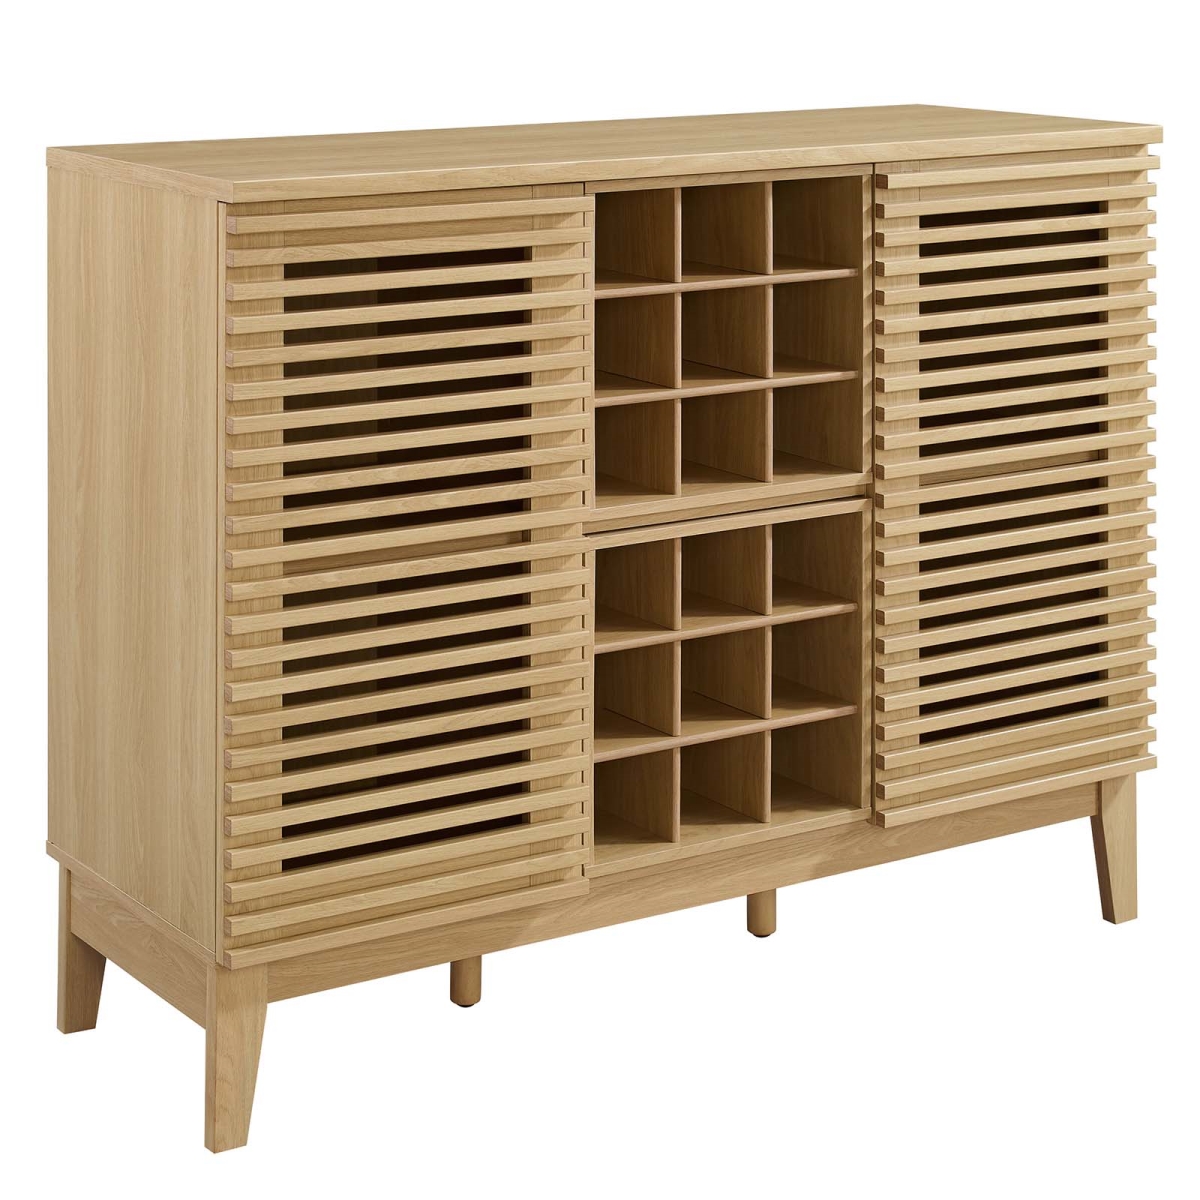 Picture of Modway Furniture EEI-6156-OAK 37 x 46 x 17 in. Render Bar Cabinet, Oak